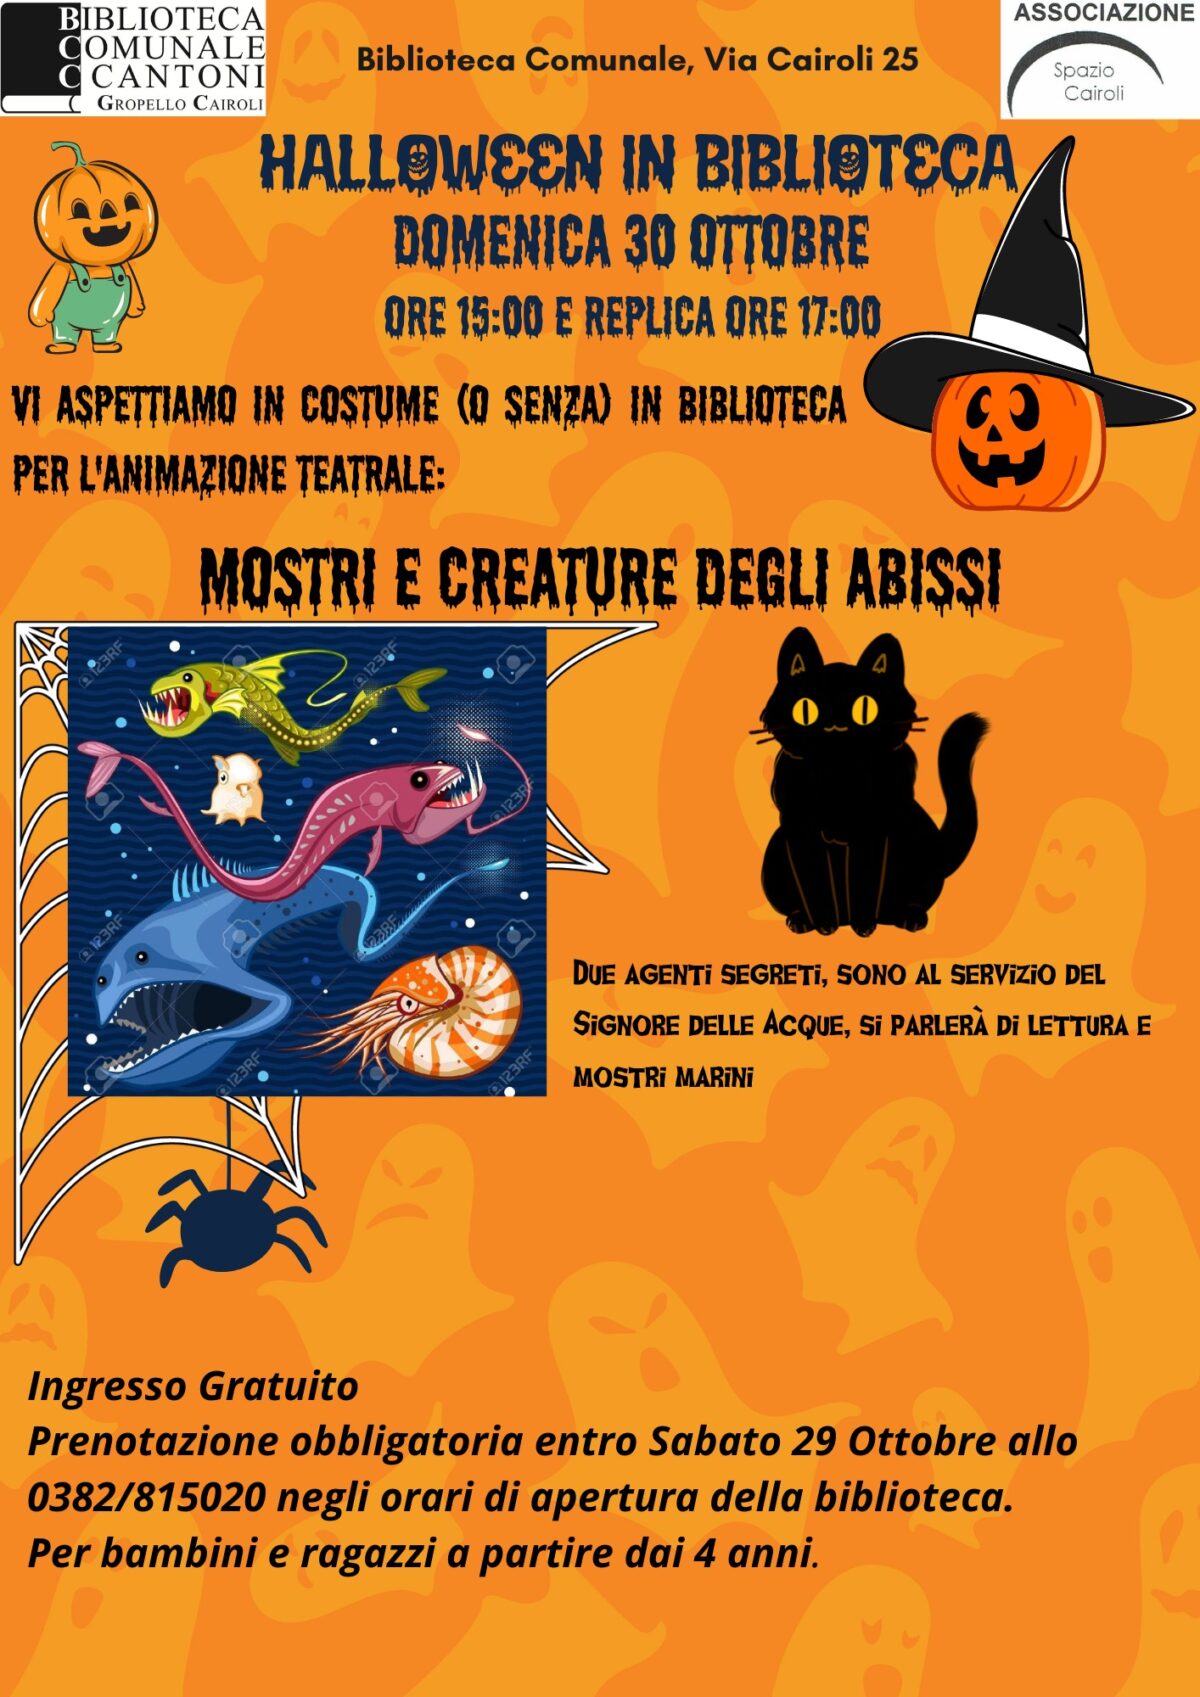 Biblioteca: domenica 30 ottobre animazione teatrale per Halloween “Mostri e creature degli abissi” alle ore 15,00 e replica alle ore 17,00